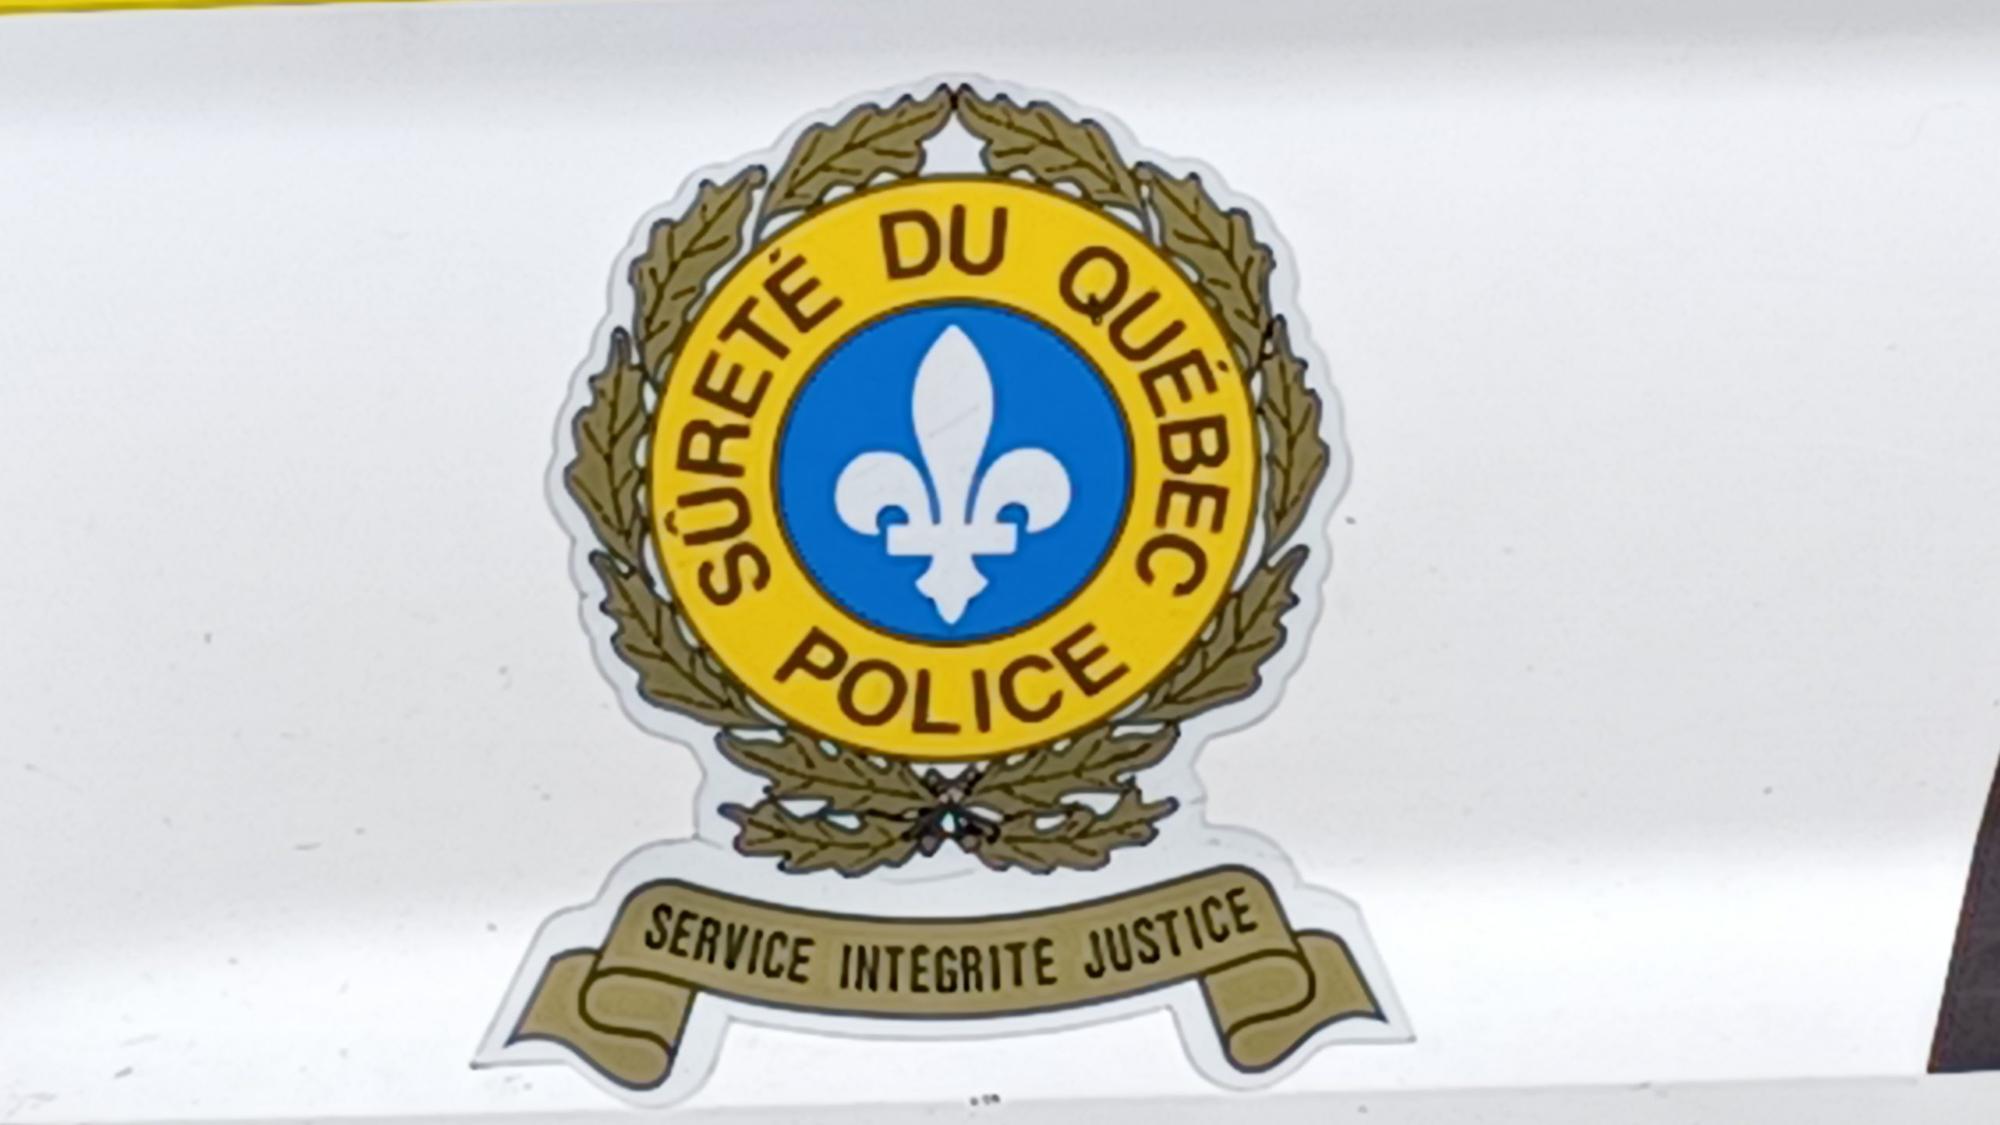 Sûreté du Québec brings Operation IMPACT to snowmobile and quad trails